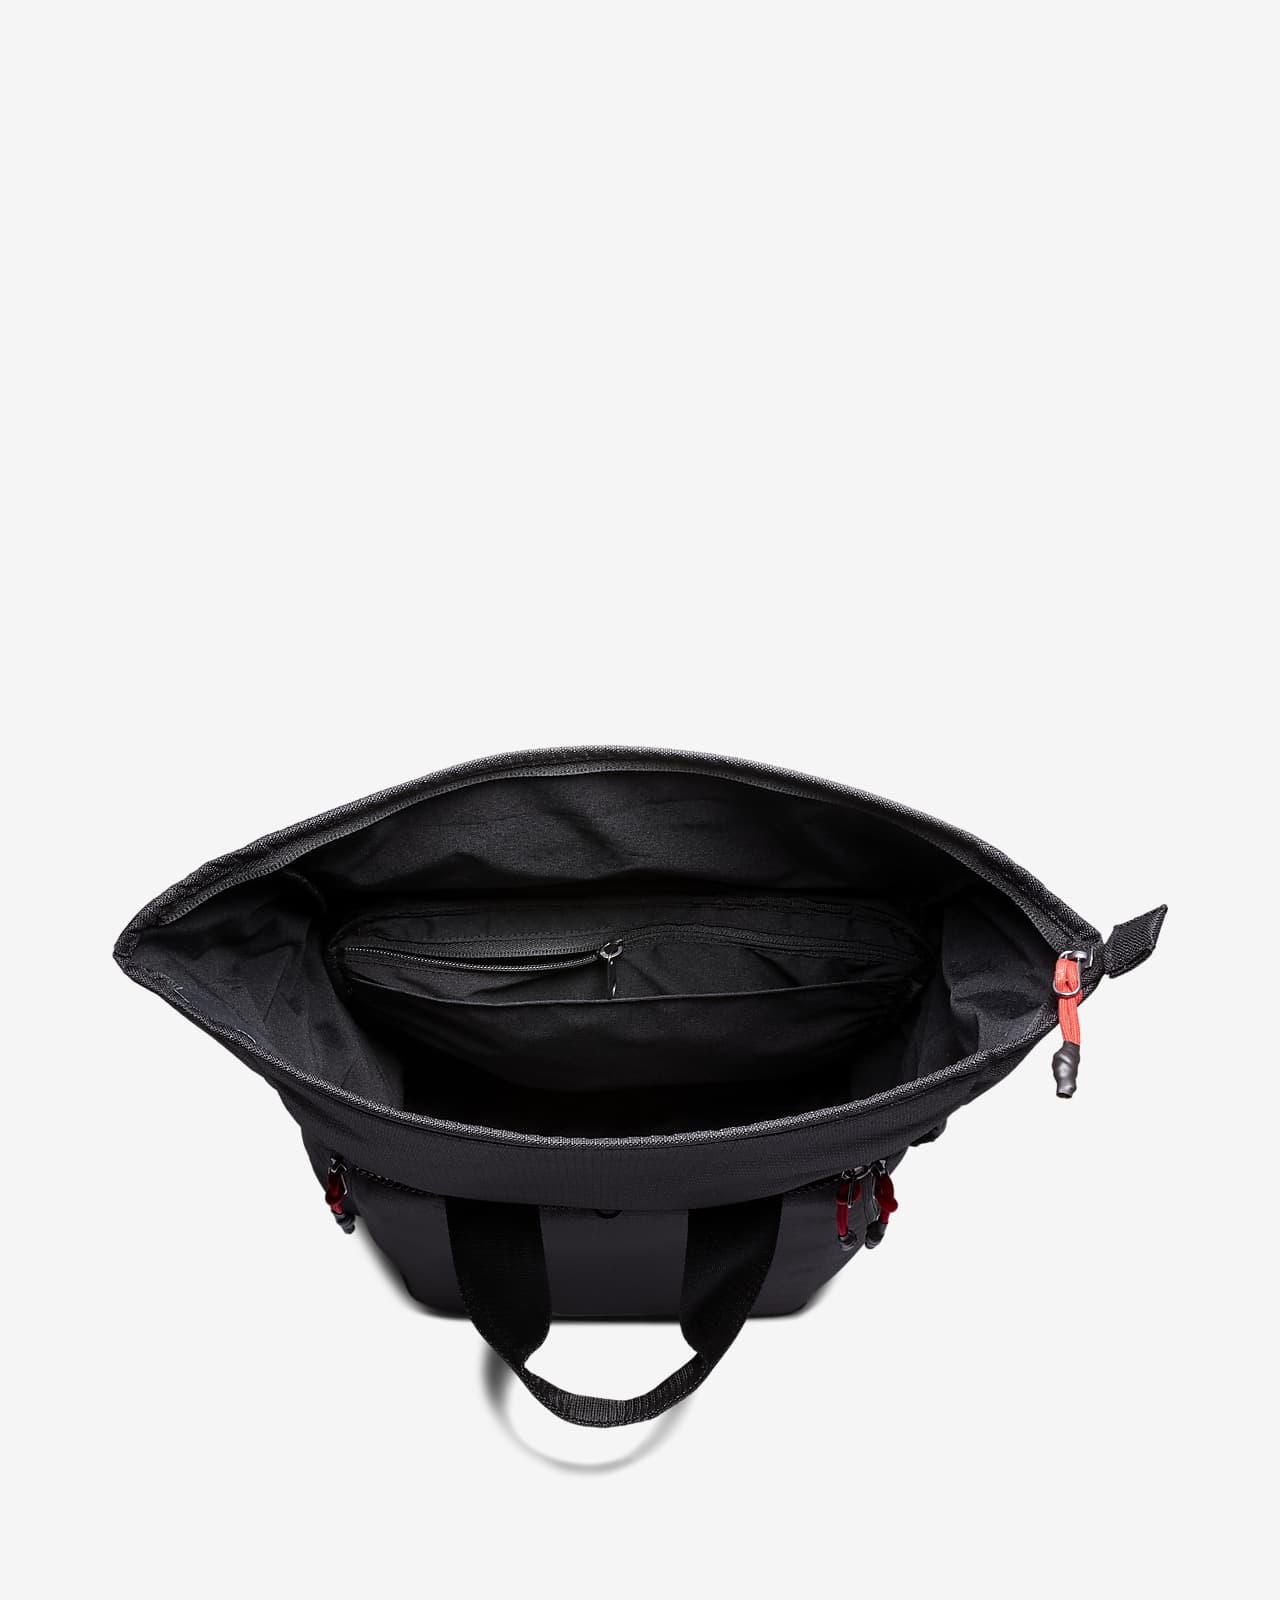 nike sport backpack black